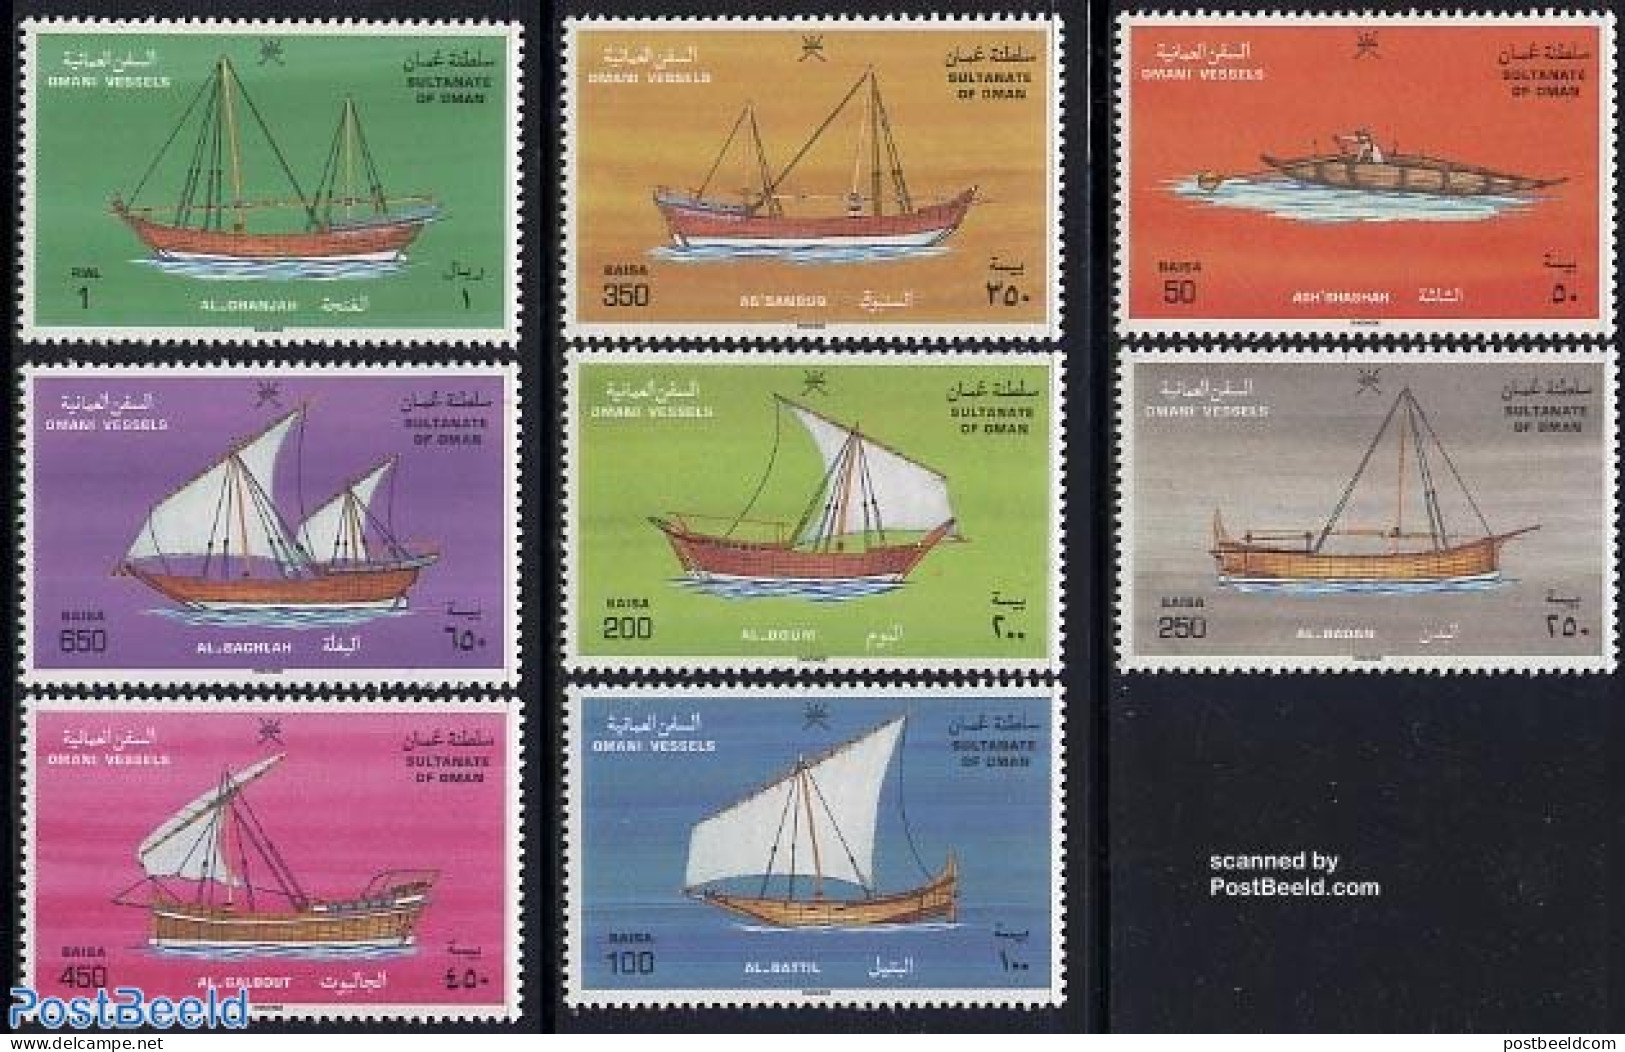 Oman 1996 Ships 8v, Mint NH, Transport - Ships And Boats - Ships